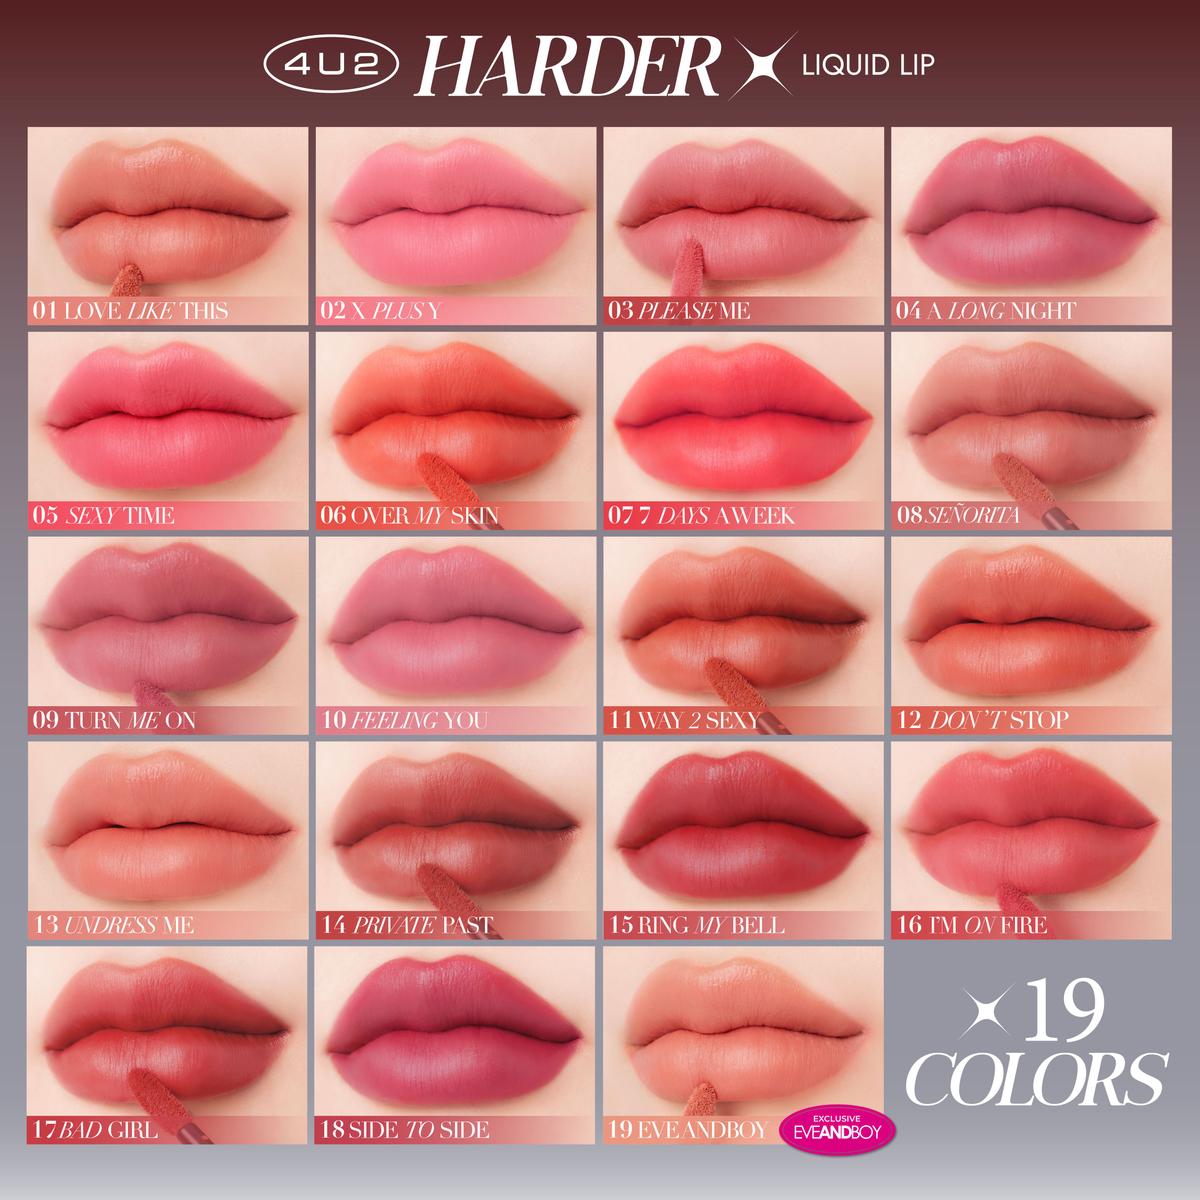 รูปภาพ:สีลิป4U2 HARDER-X Liquid Lip